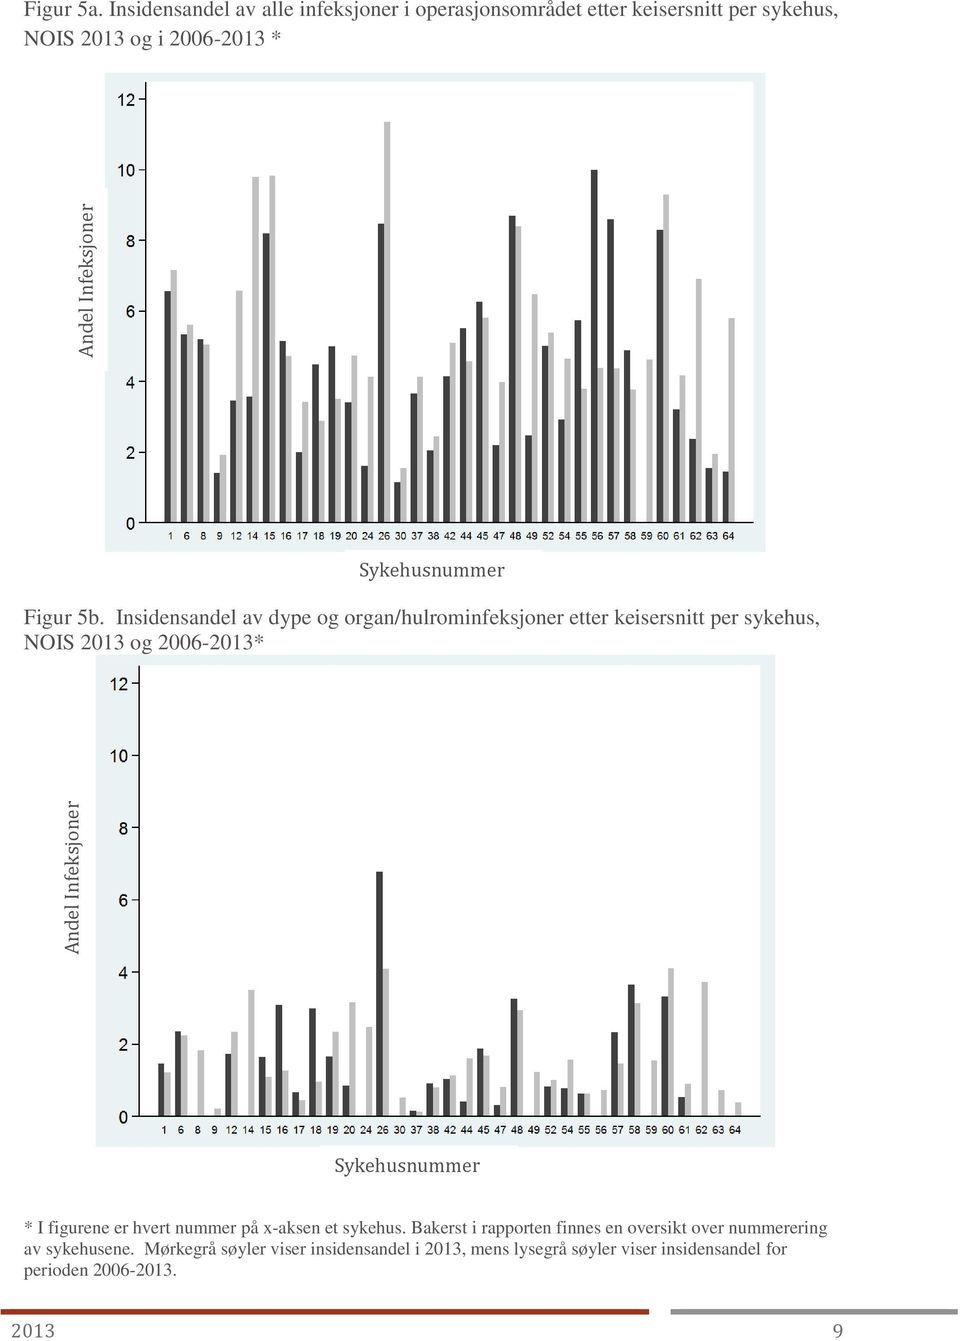 Insidensandel av dype og organ/hulrominfeksjoner etter keisersnitt per sykehus, NOIS 2013 og 2006-2013* * I figurene er hvert